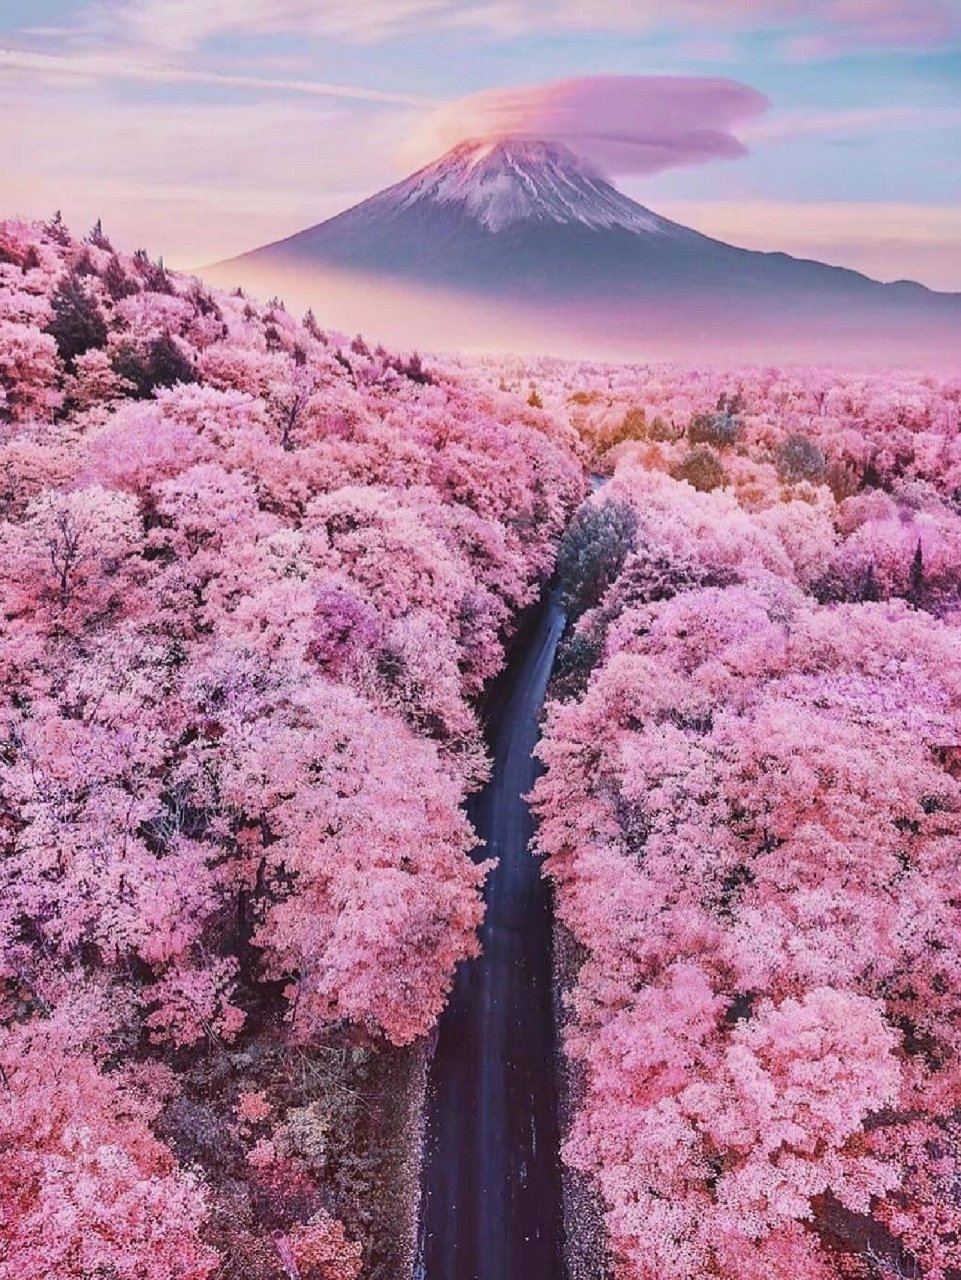 日本9591——富士山(mount fuji)90 富士山(日语:ふじさん;英语